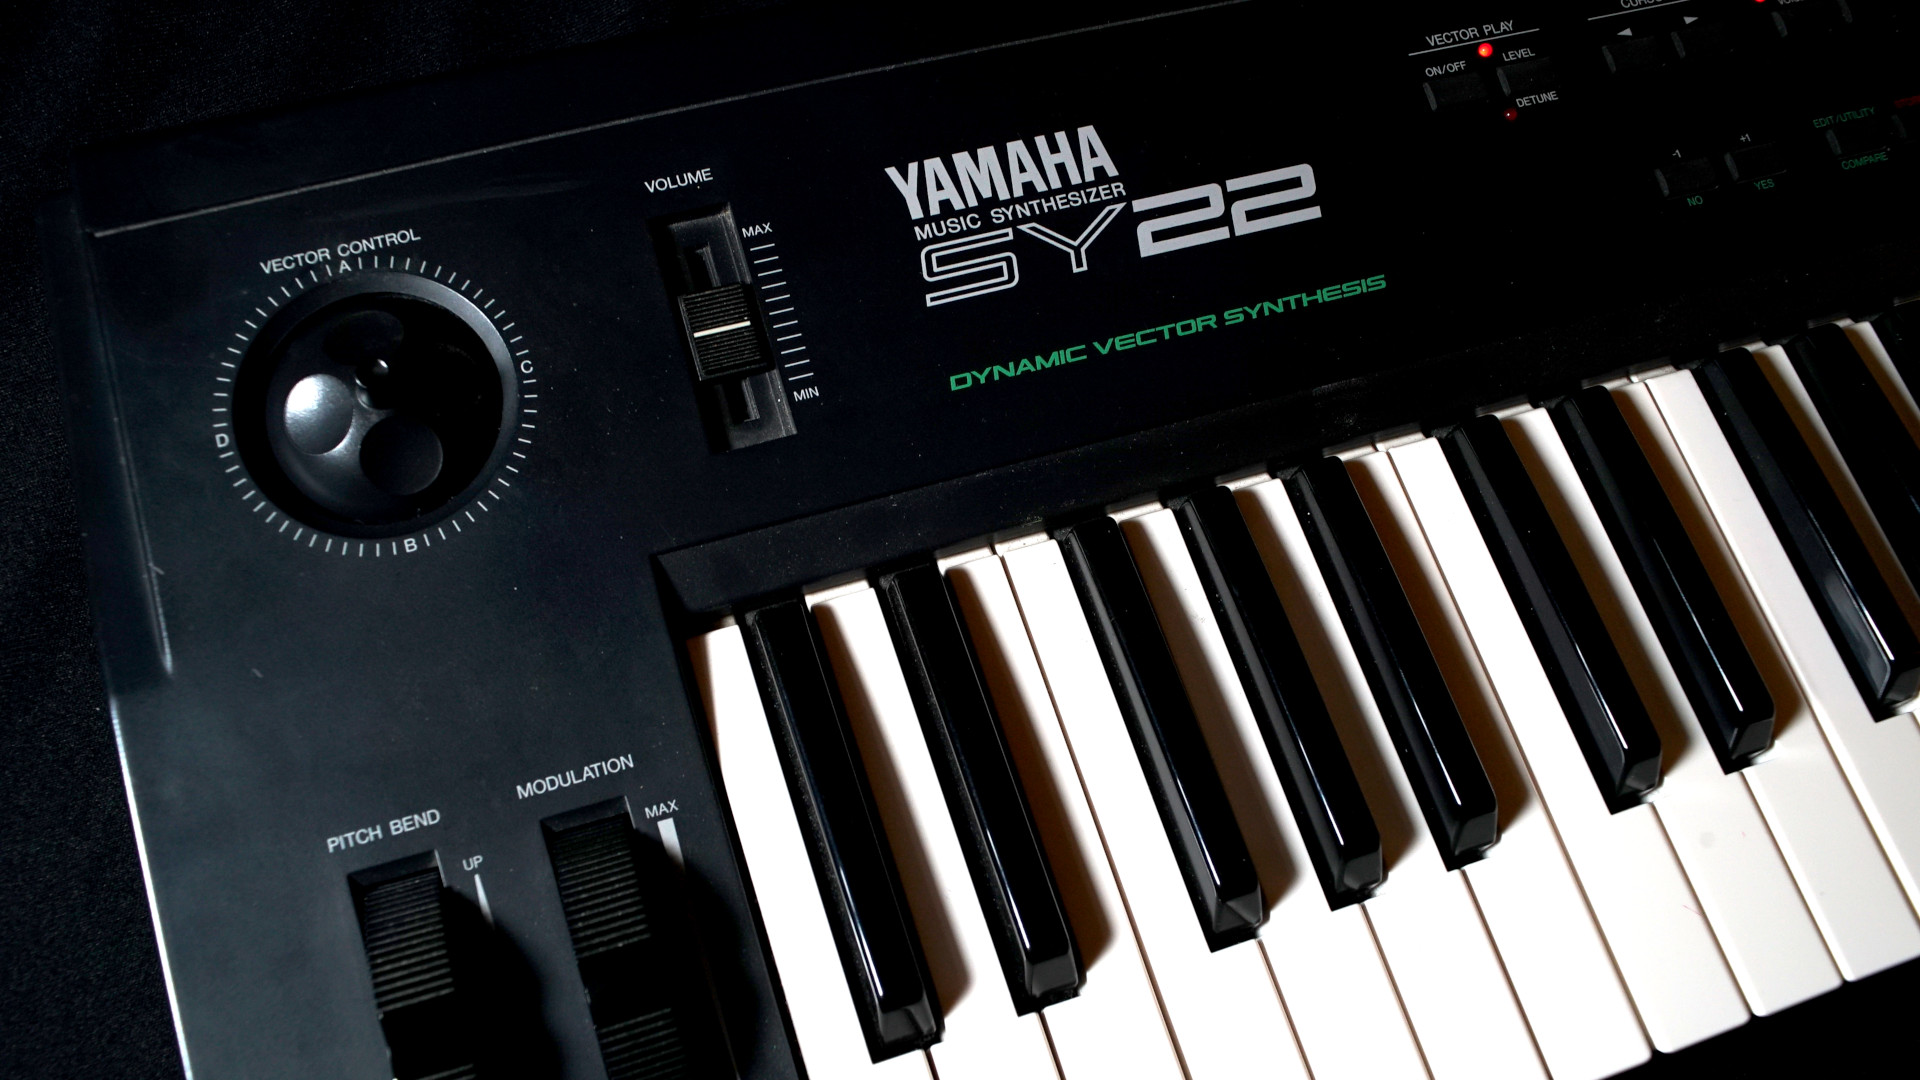 Yamaha SY22 synthesizer close-up